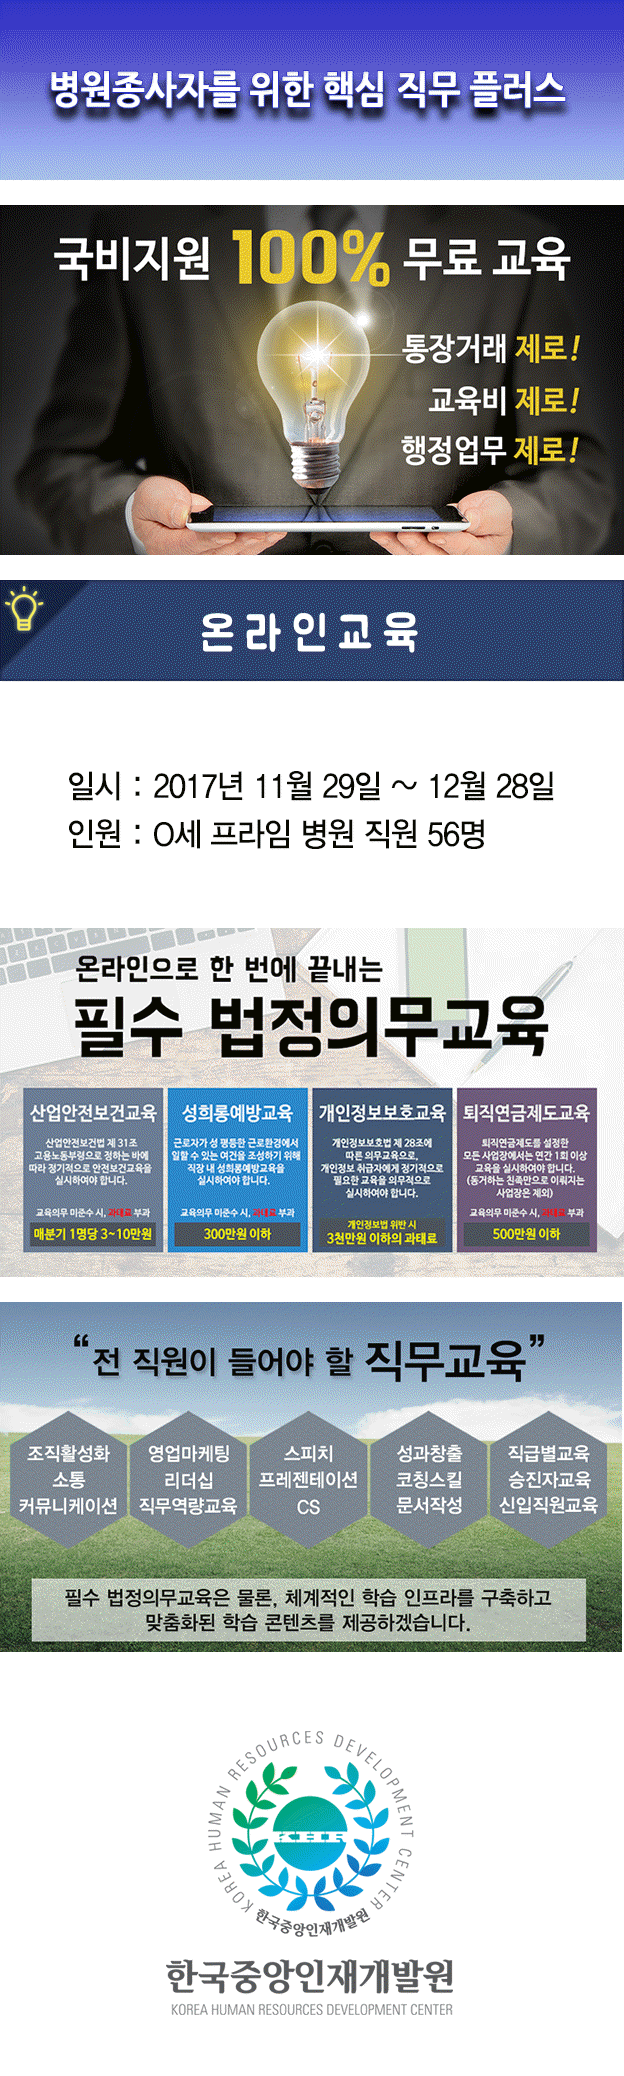 사본 -한국중앙인재개발원 공지사항(온라인) 연세프라임병원.gif